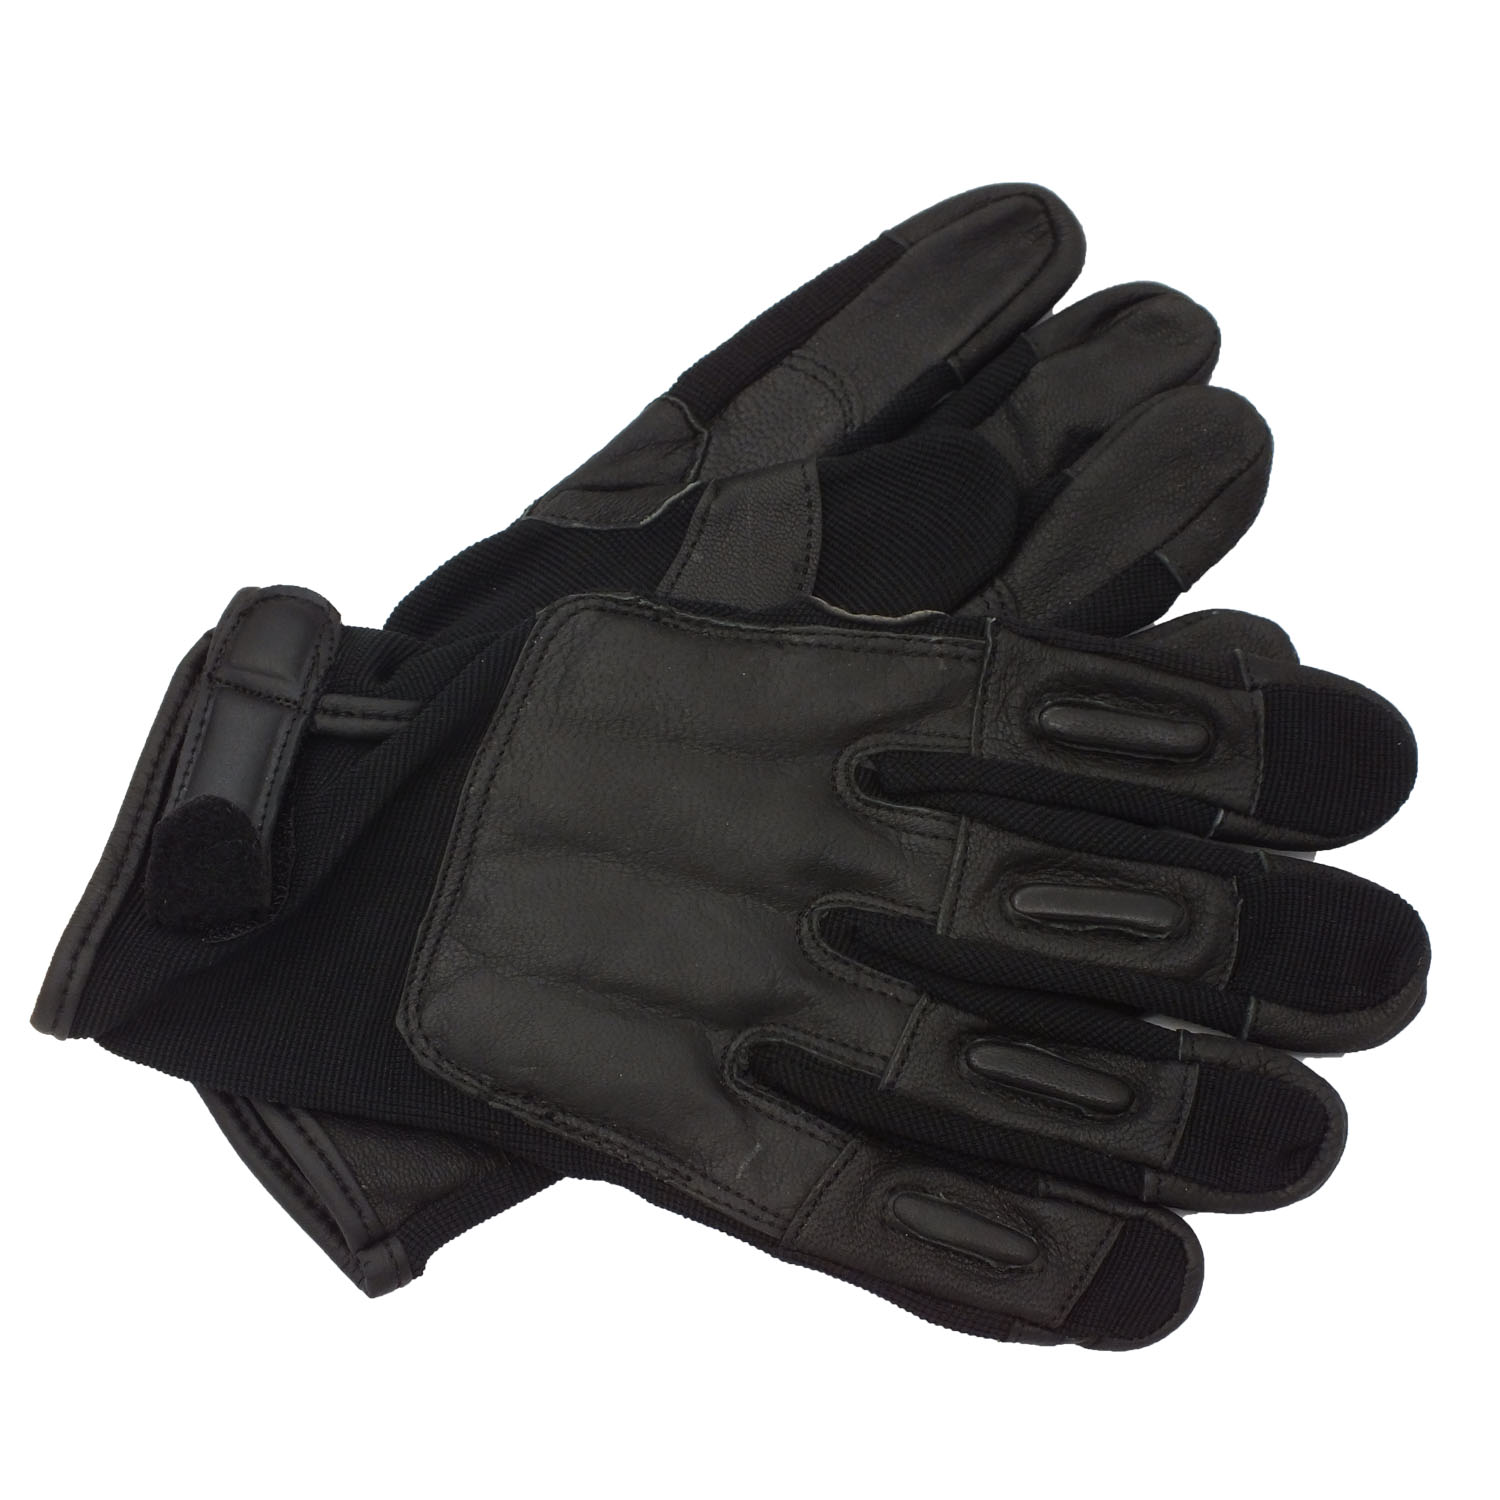 Enforcer Tactical SAP Gloves, Black,